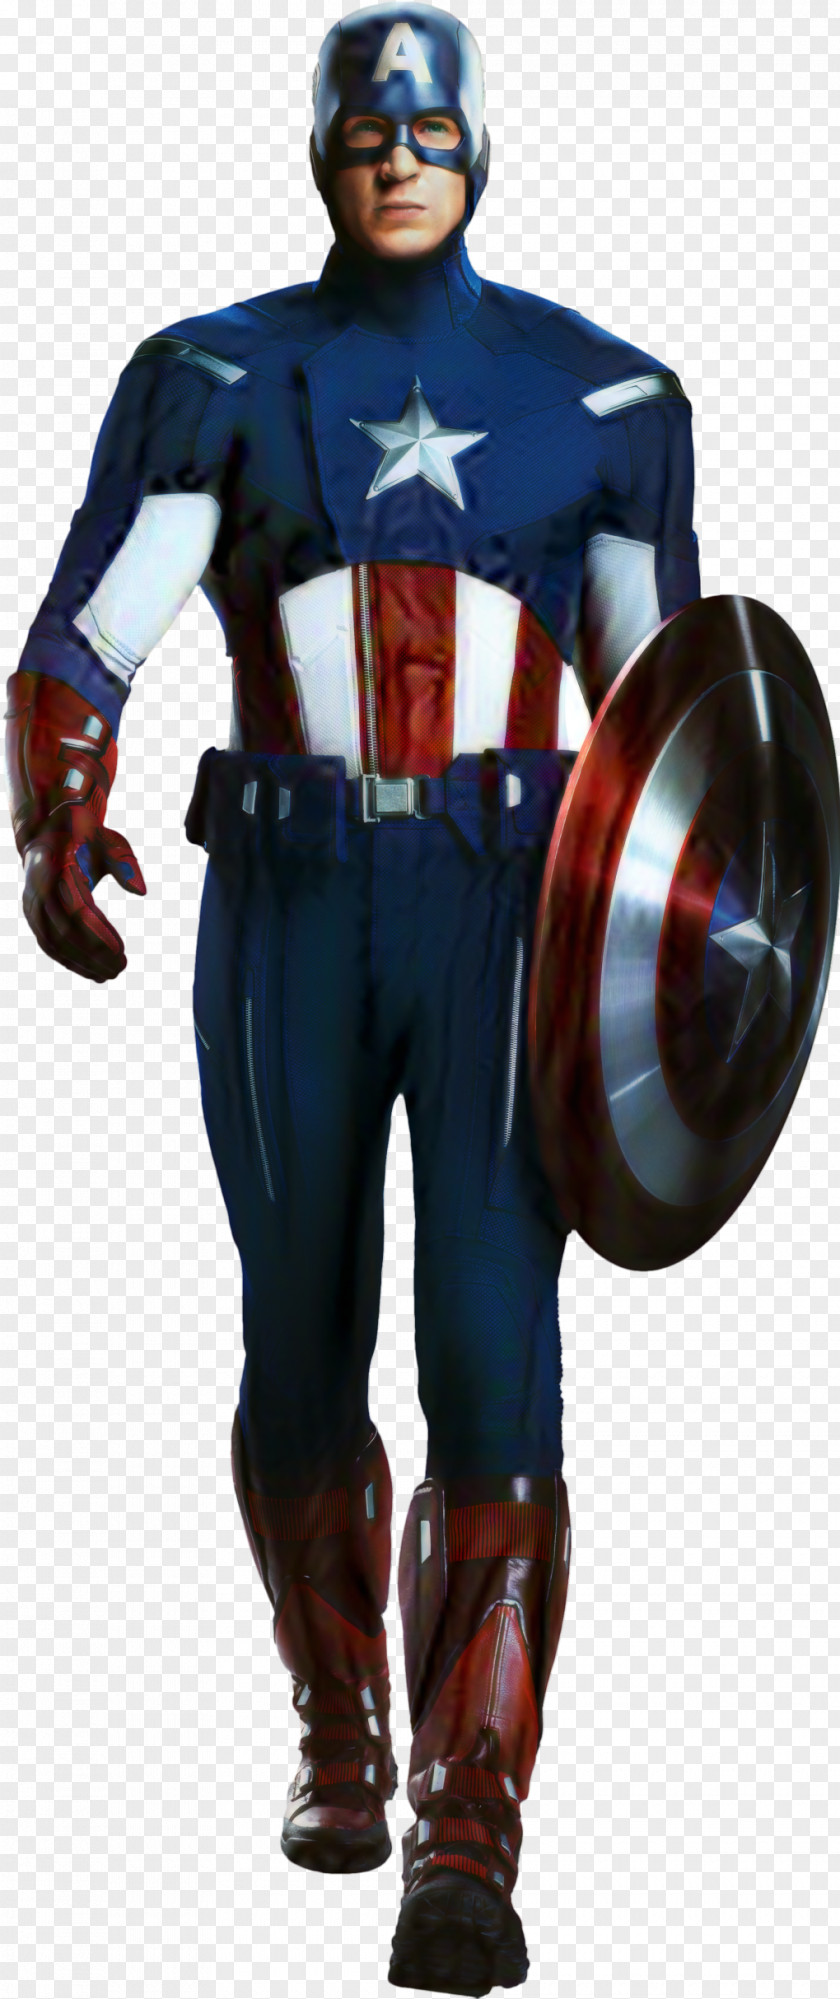 Captain America: The First Avenger Bucky Barnes Chris Evans Avengers PNG